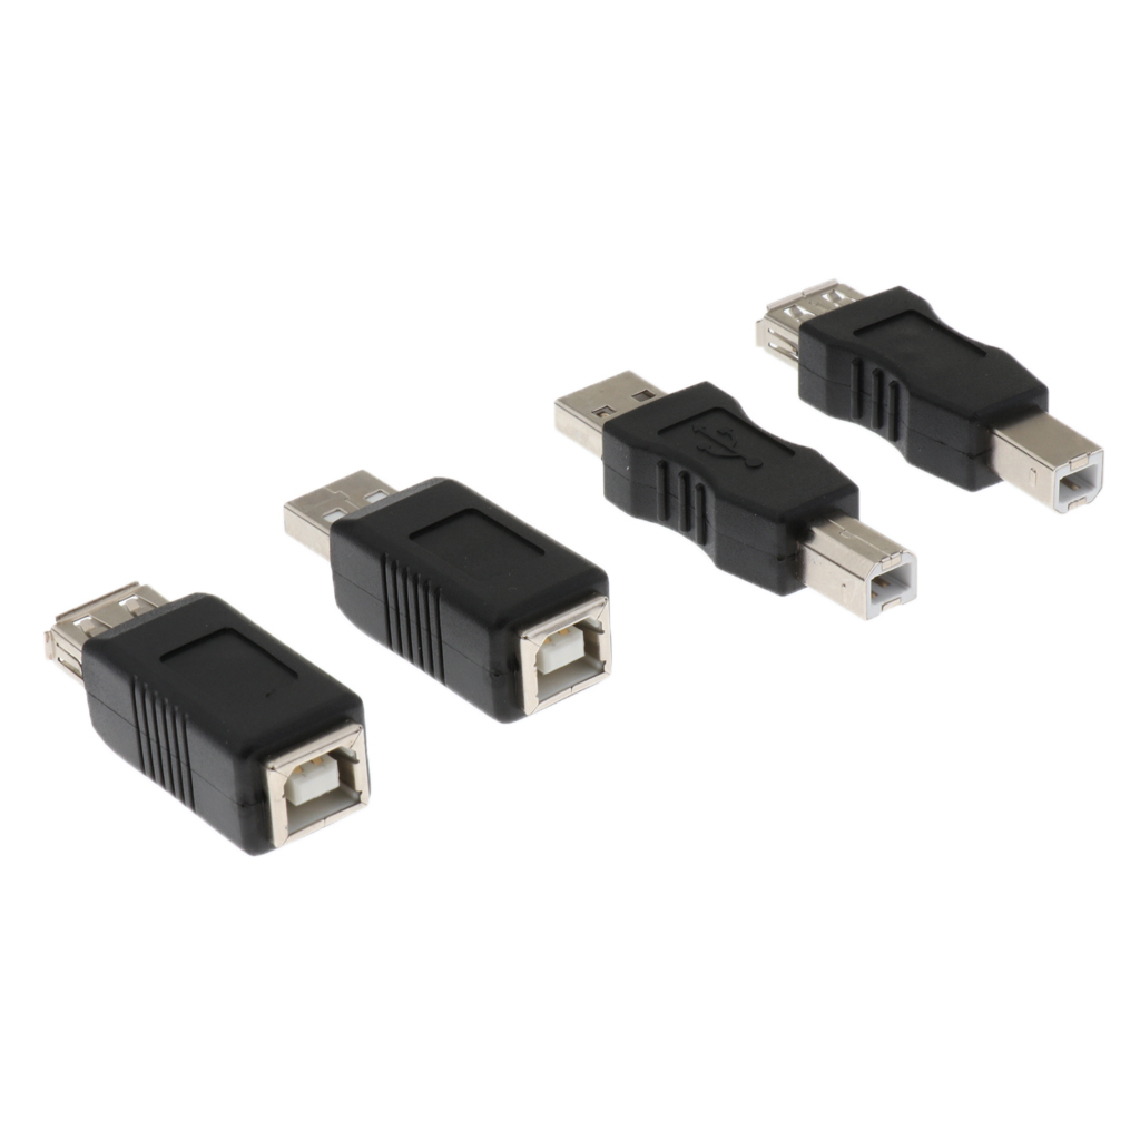 marque generique - Connecteur de Câble D'imprimante, Connecteurs USB 2.0 Haute Vitesse Kit D'adaptateurs de Scanner D'imprimante pour HP, Canon, Dell, , Etc. - Hub